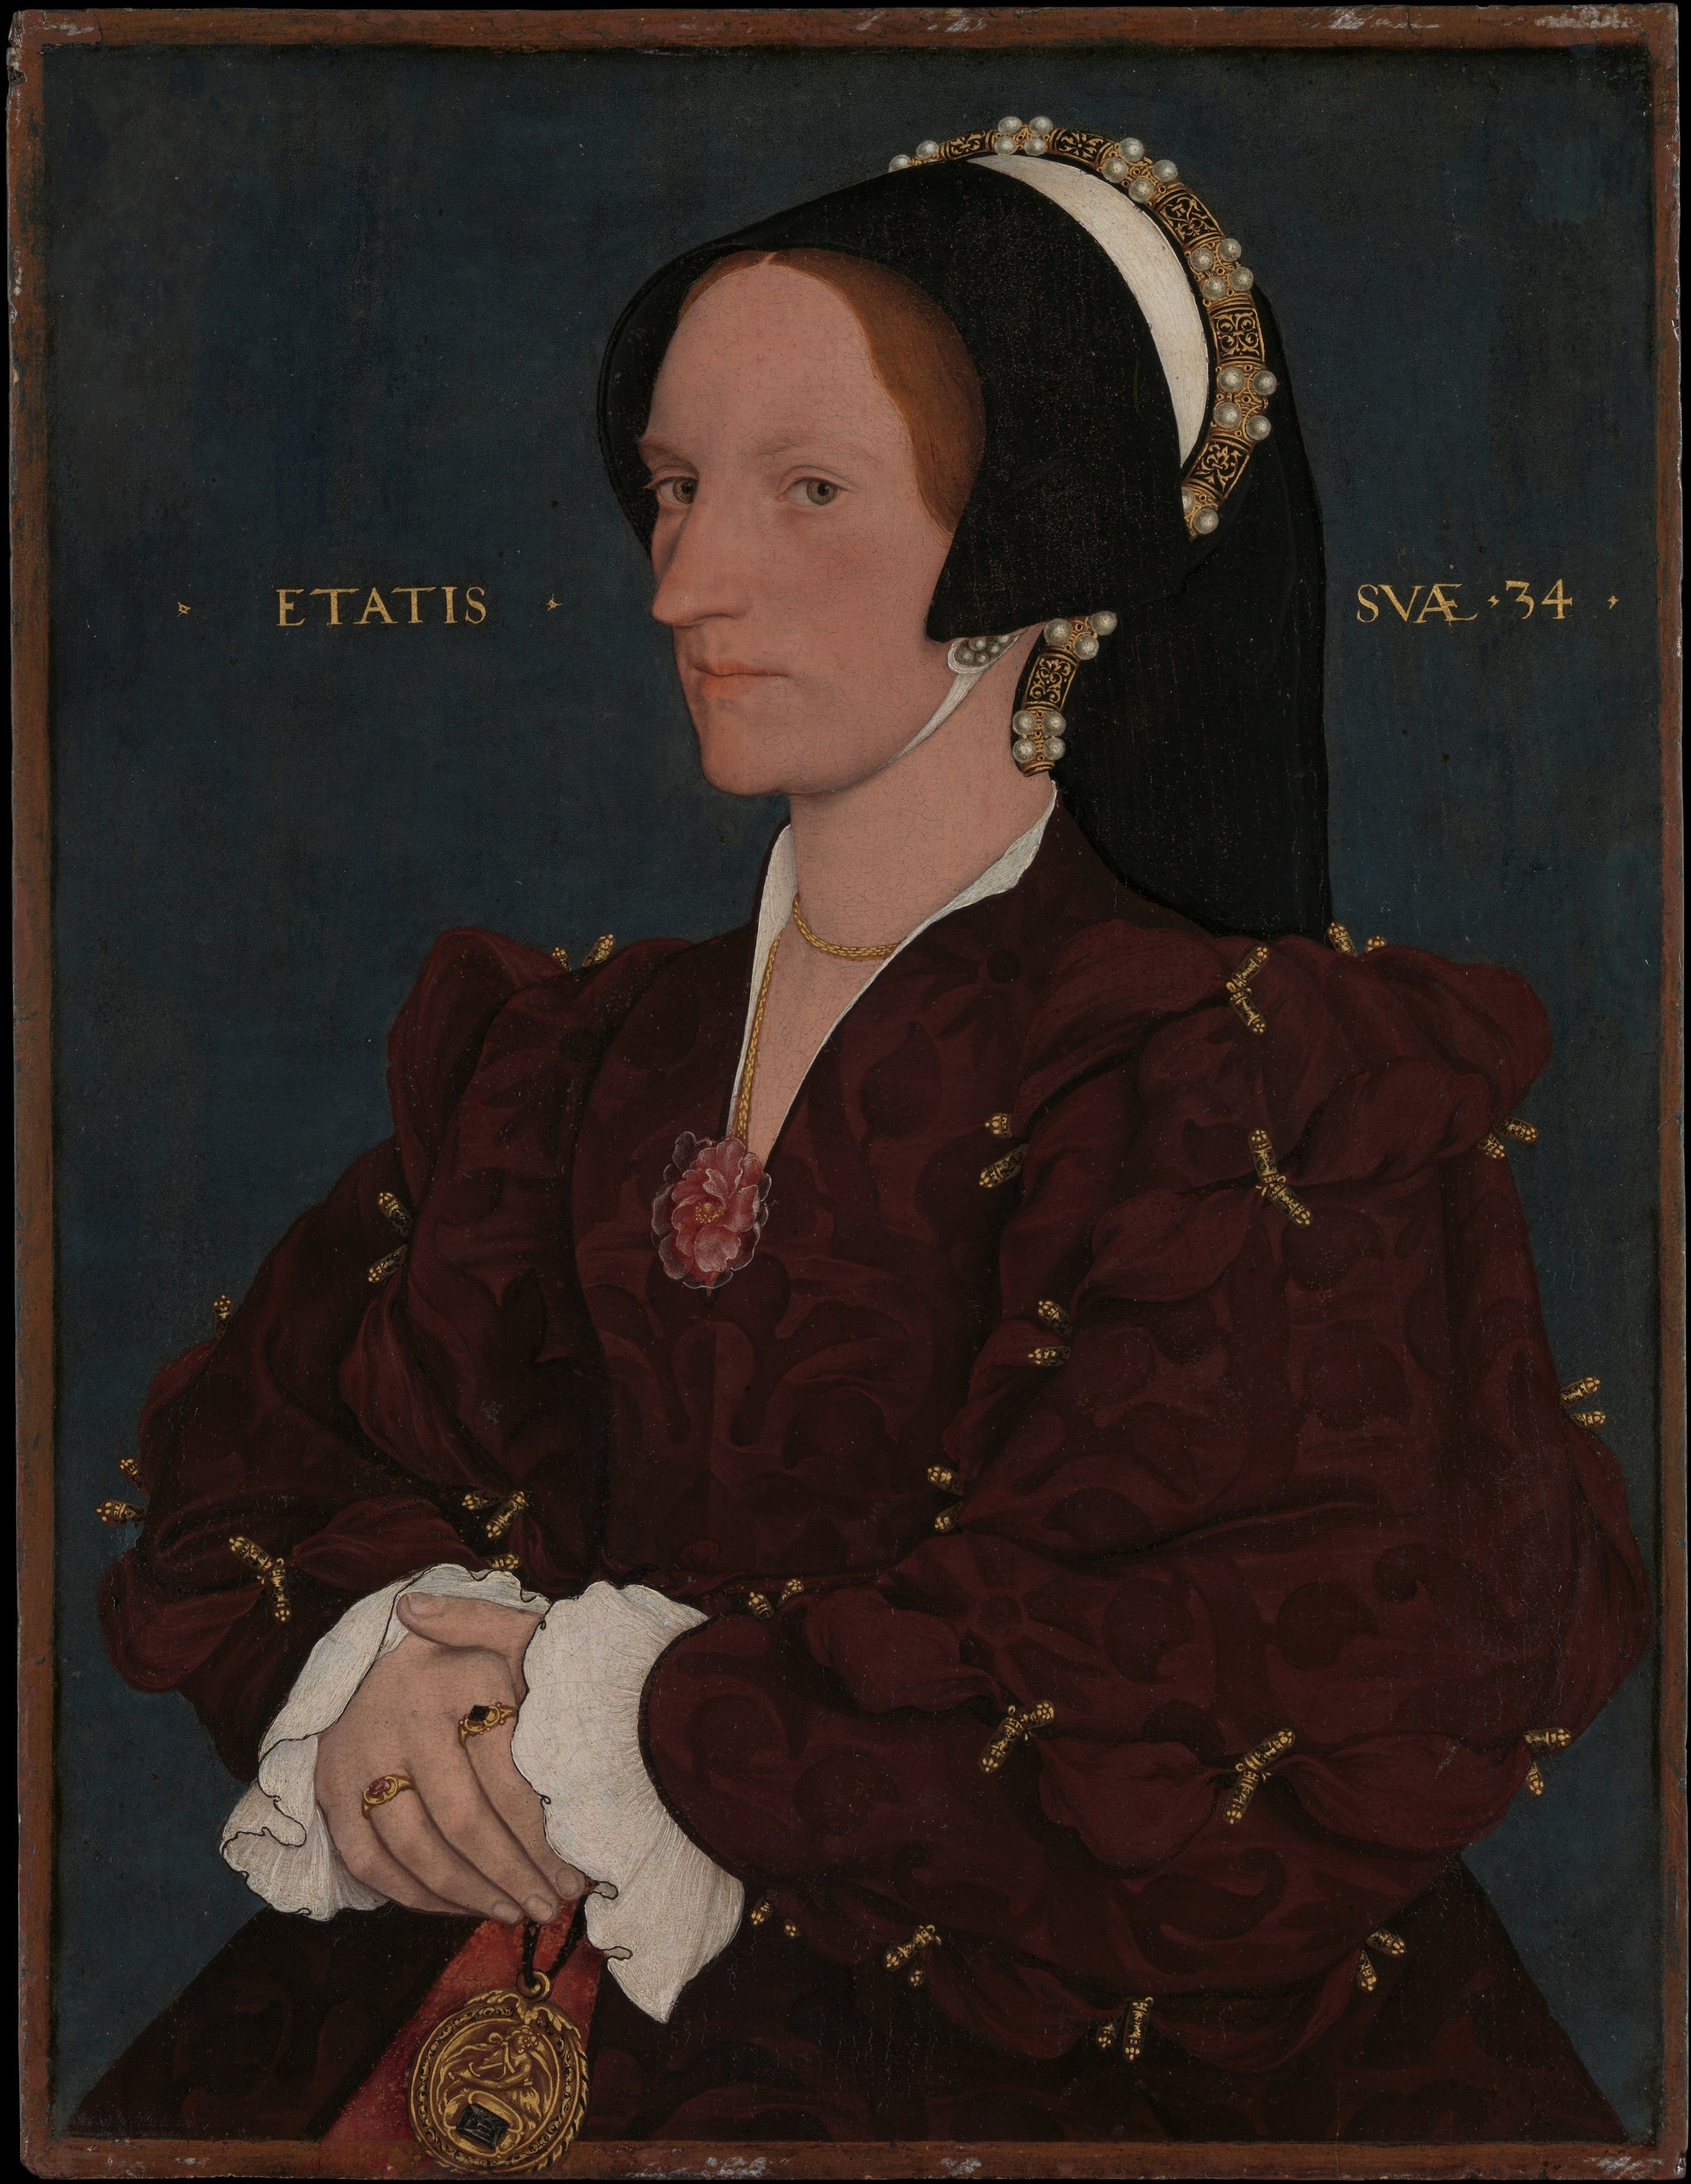 Margaret Wyatt, Lady Lee by Genç Hans Holbein - 1540 - 42.5 x 32.7 cm 